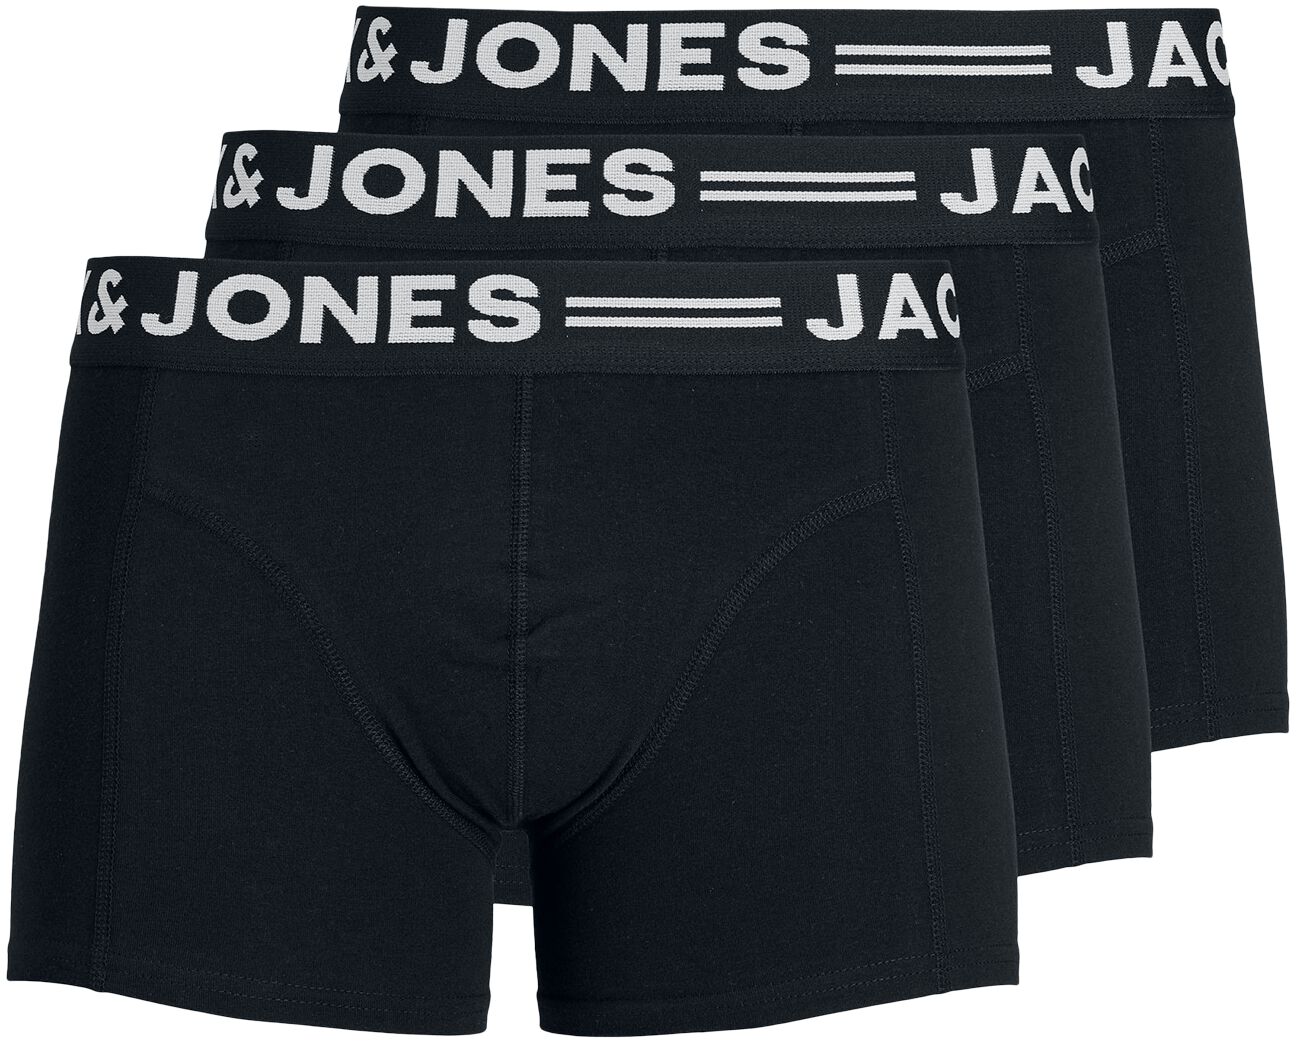 Jack & Jones SENSE TRUNKS 3-PACK Boxershort schwarz in S von jack & jones